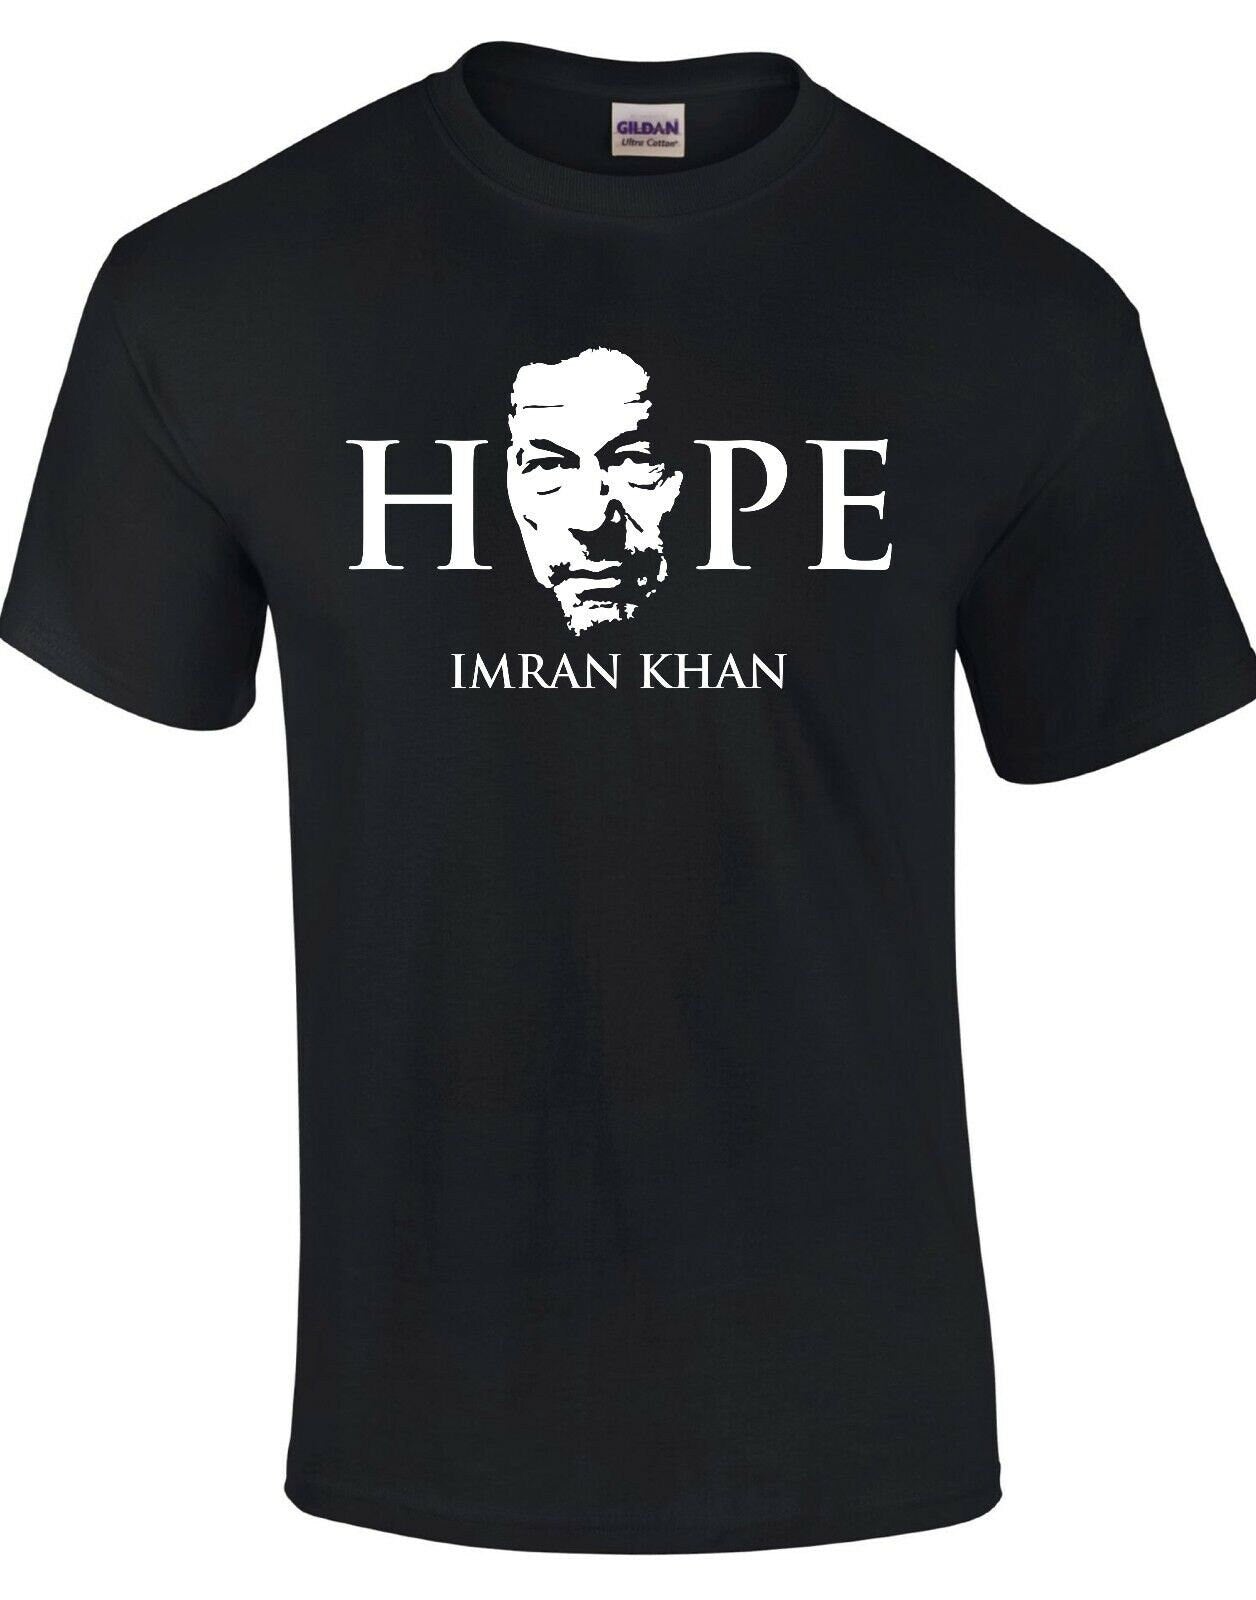 Hope - Imran Khan Black T-Shirt